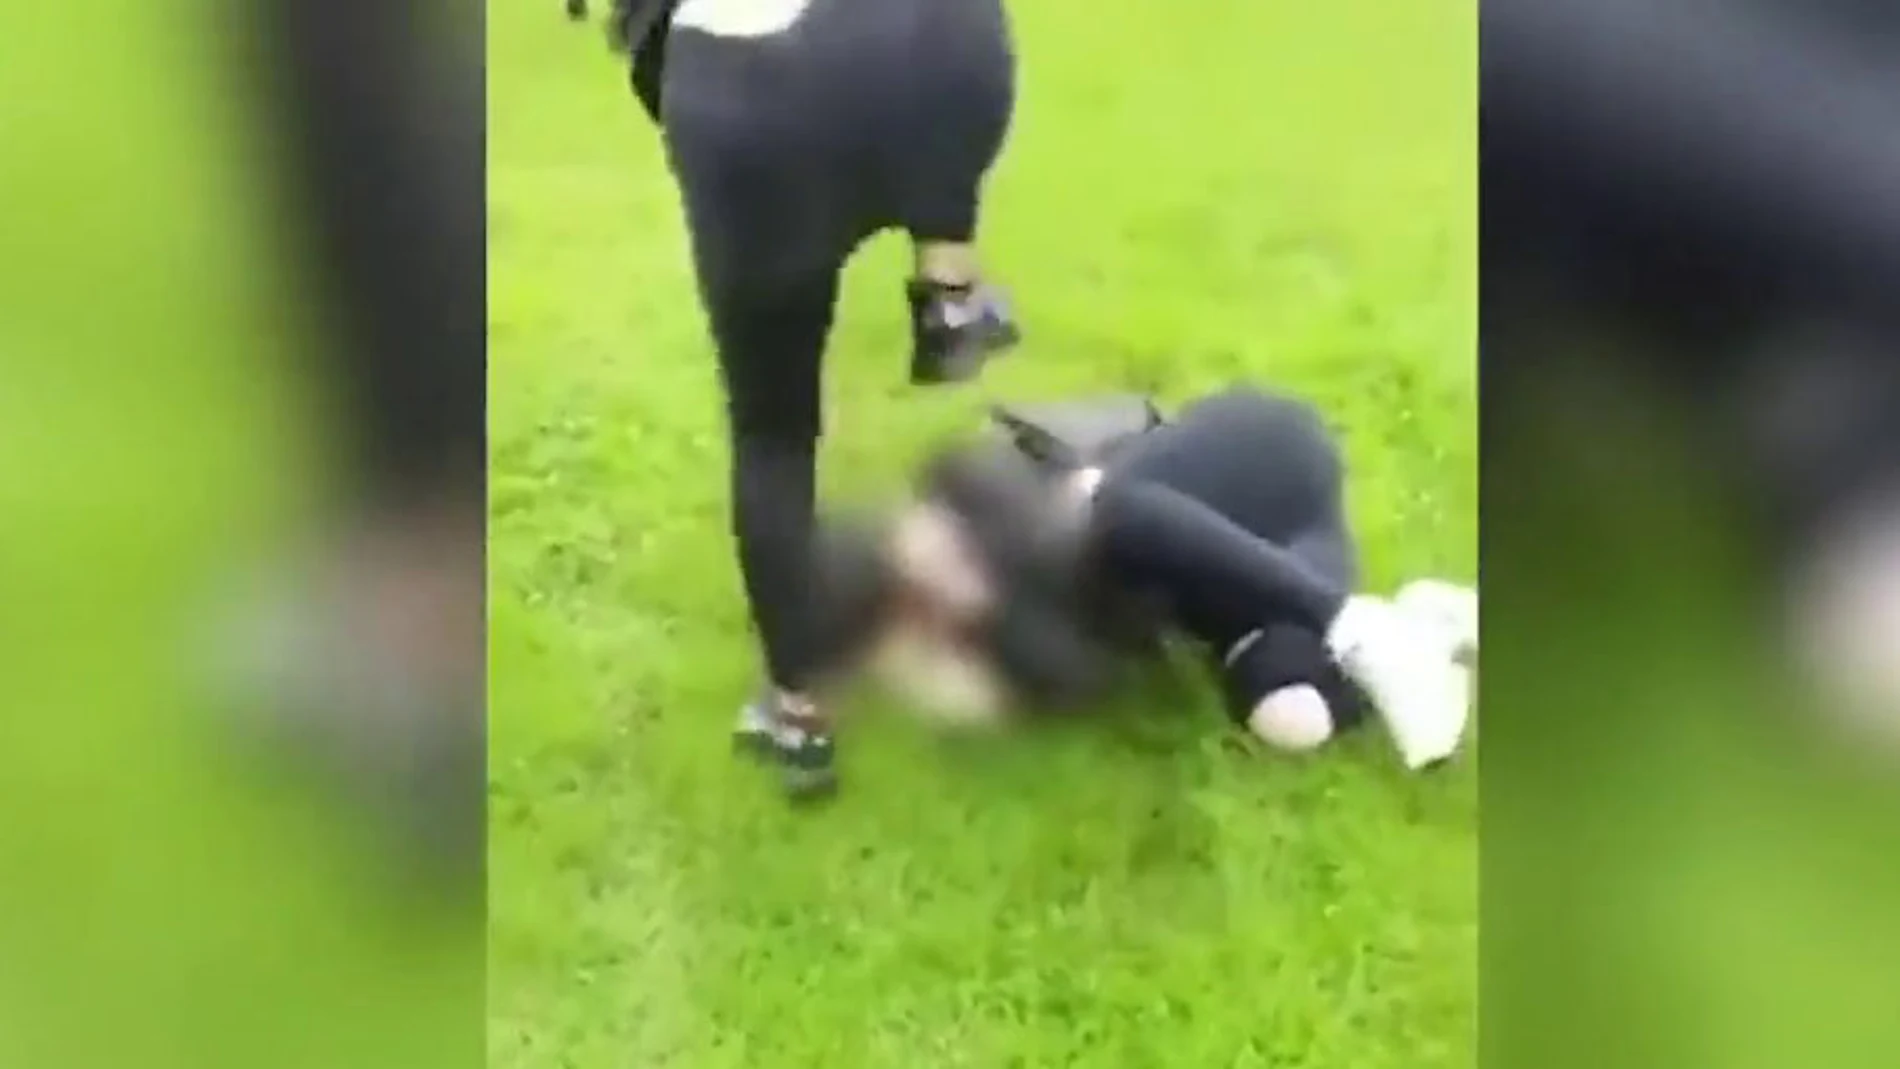 Graban cómo una joven patea la cabeza de una chica de 14 años delante de sus compañeros